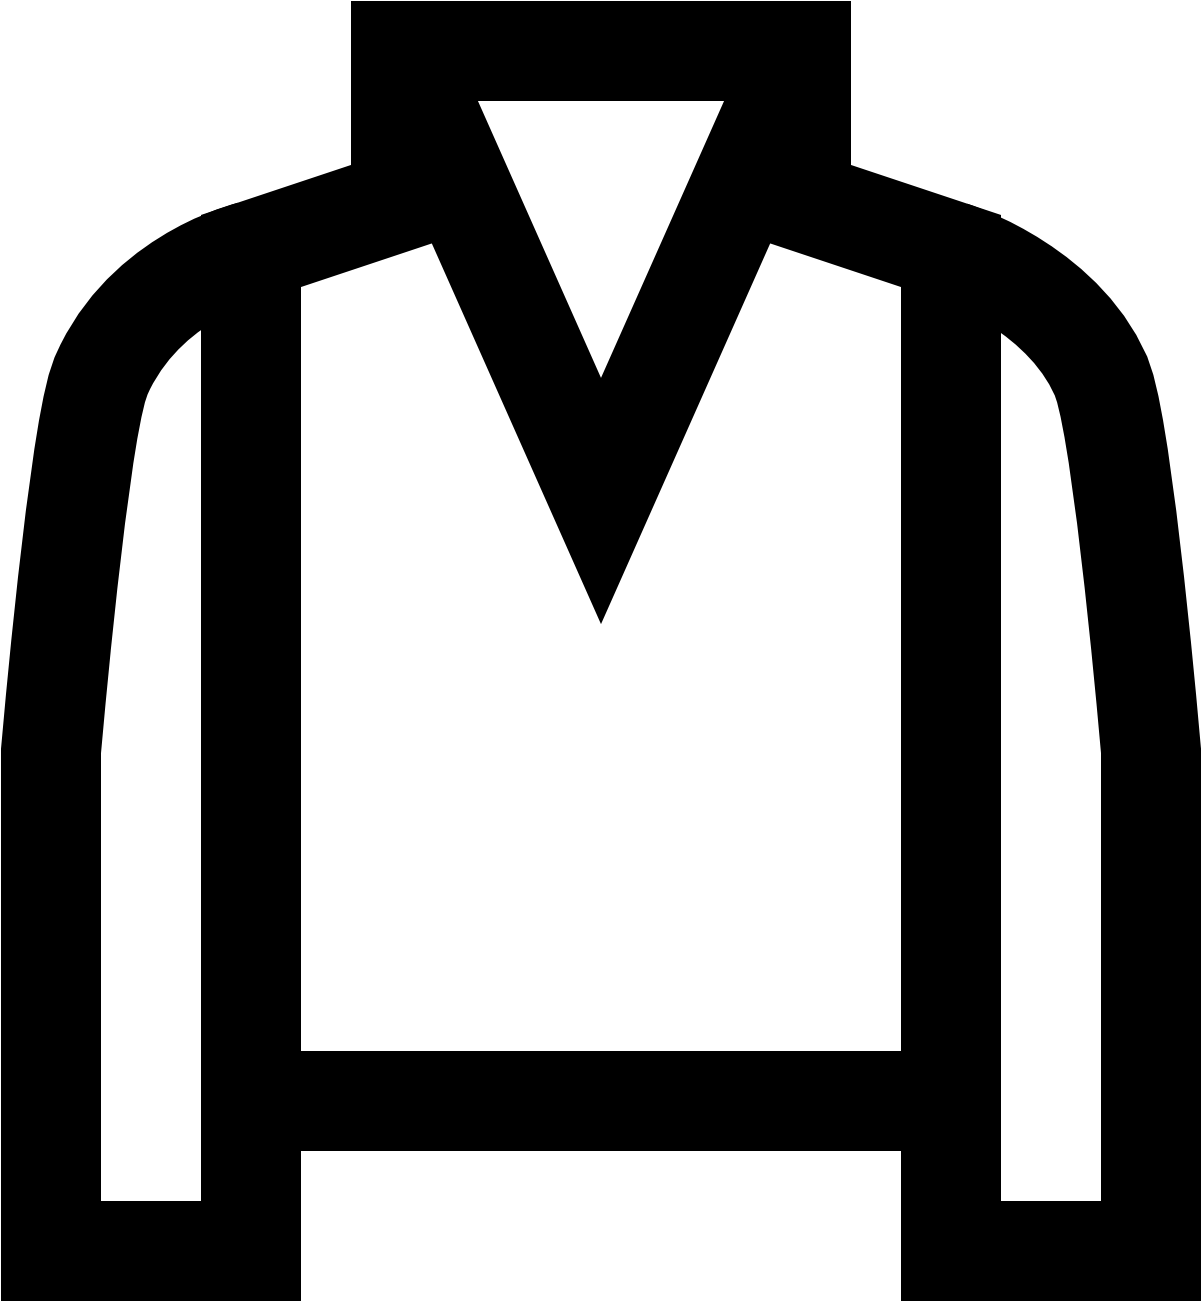 Jacket Icon - Jacket Logo Transparent (1600x1600)